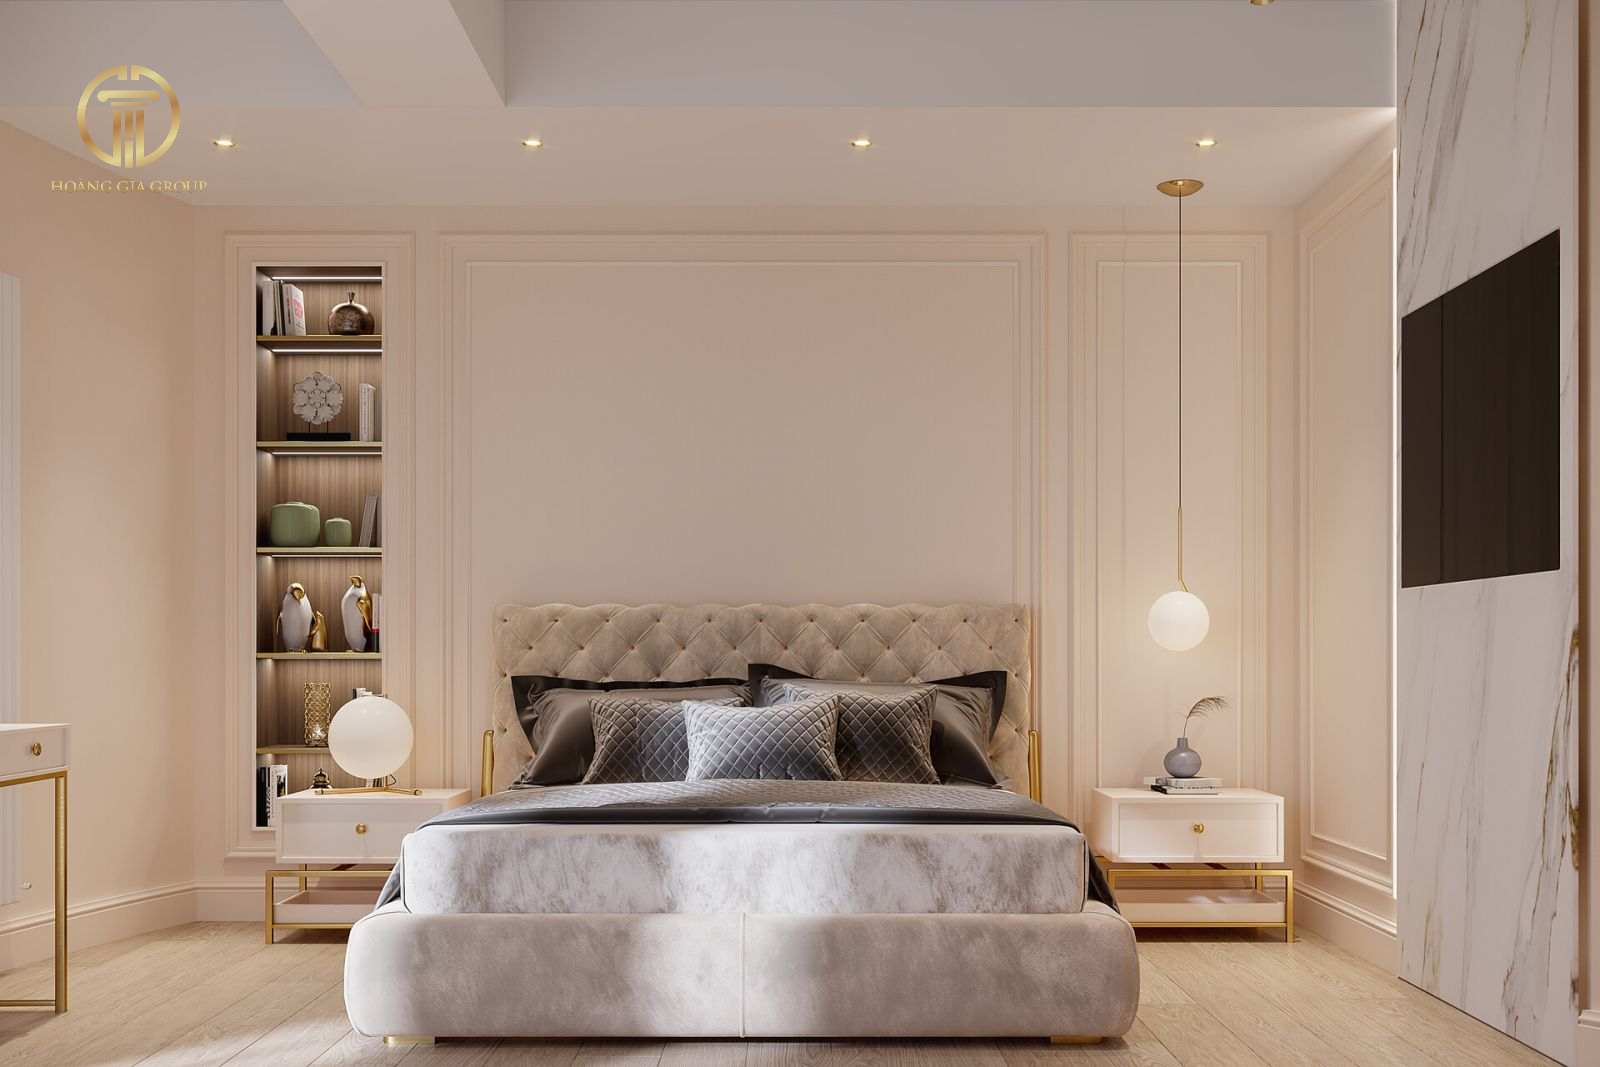 Mẫu phòng ngủ tân cổ điển có diện tích nhỏ với thiết kế đơn giản, thanh lịch